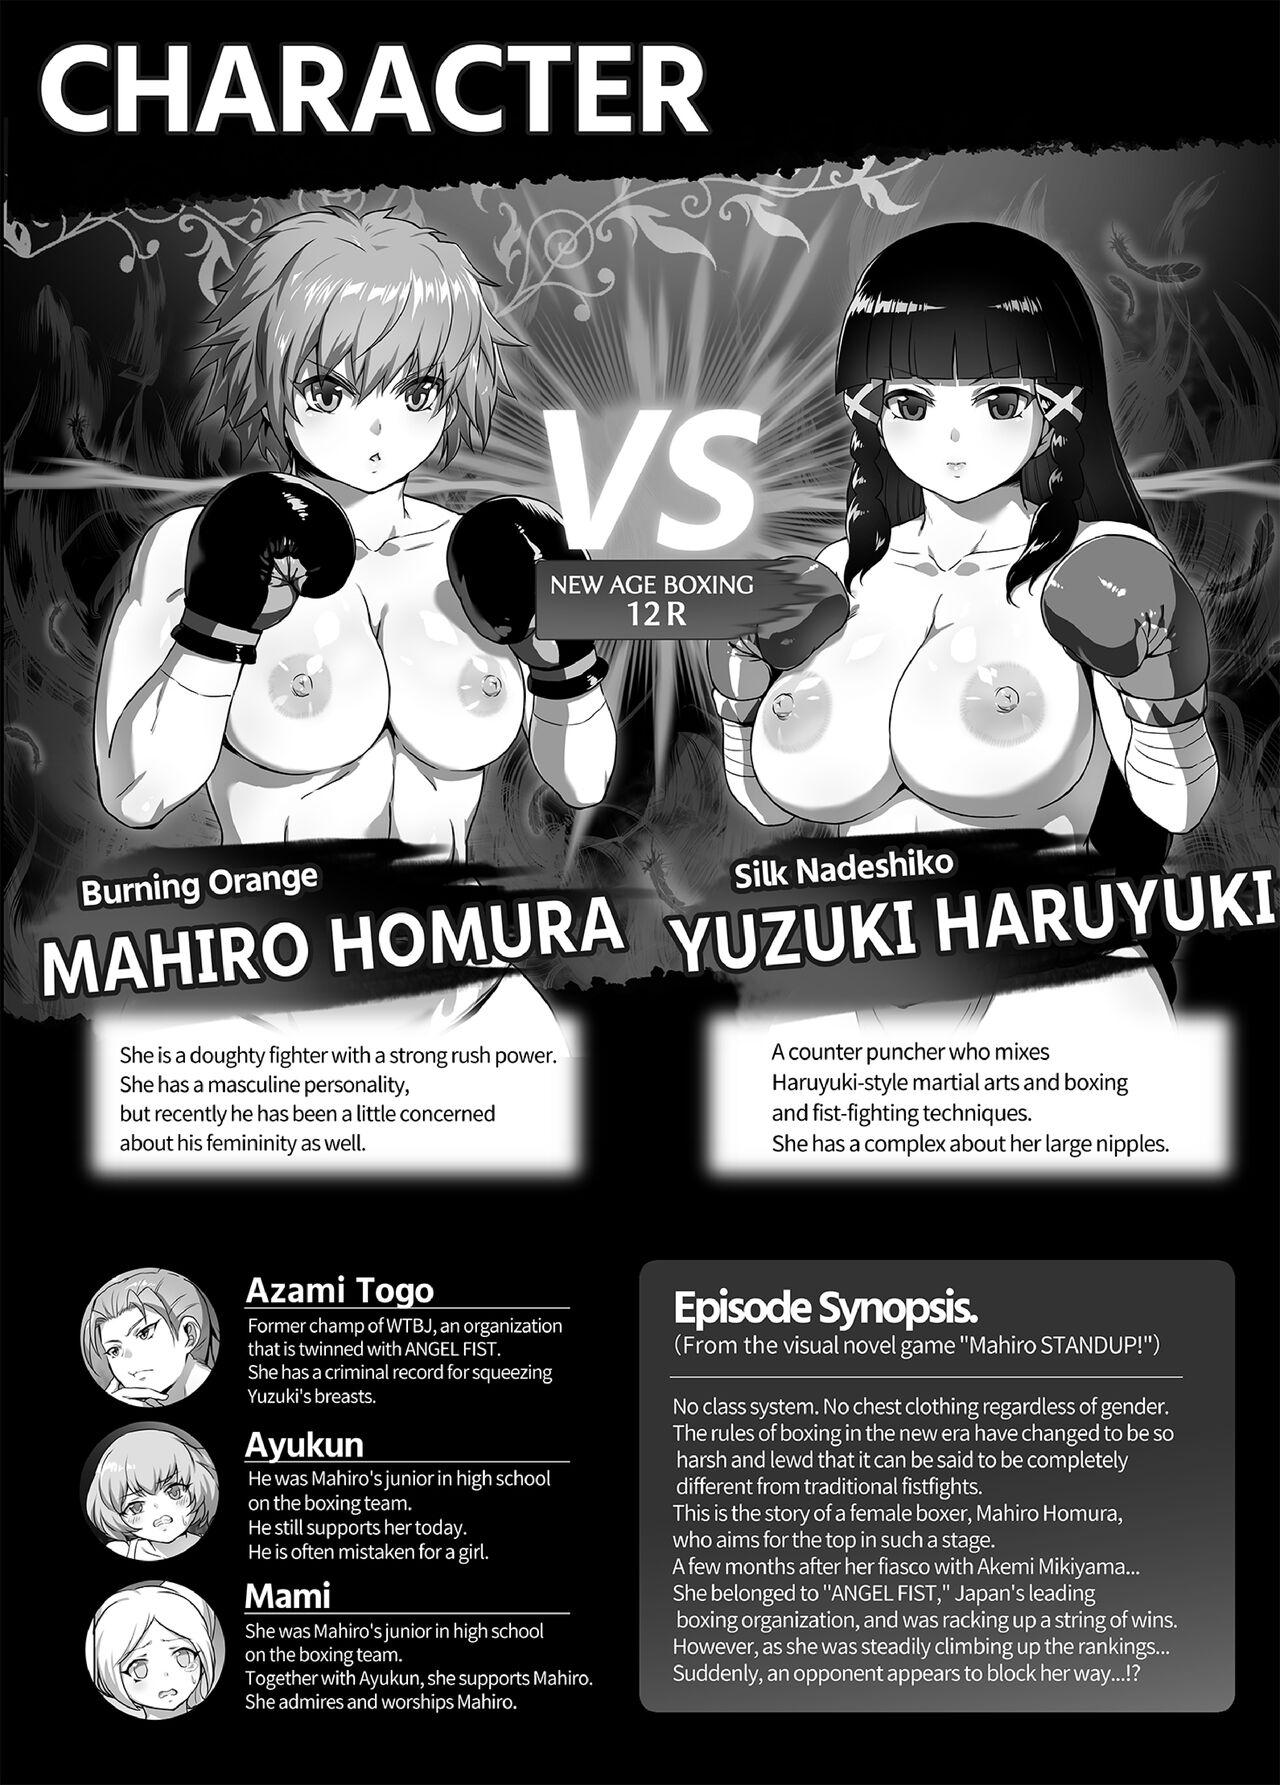 Grande Mahiro STANDUP! Manga Ver. Licking Pussy - Page 4